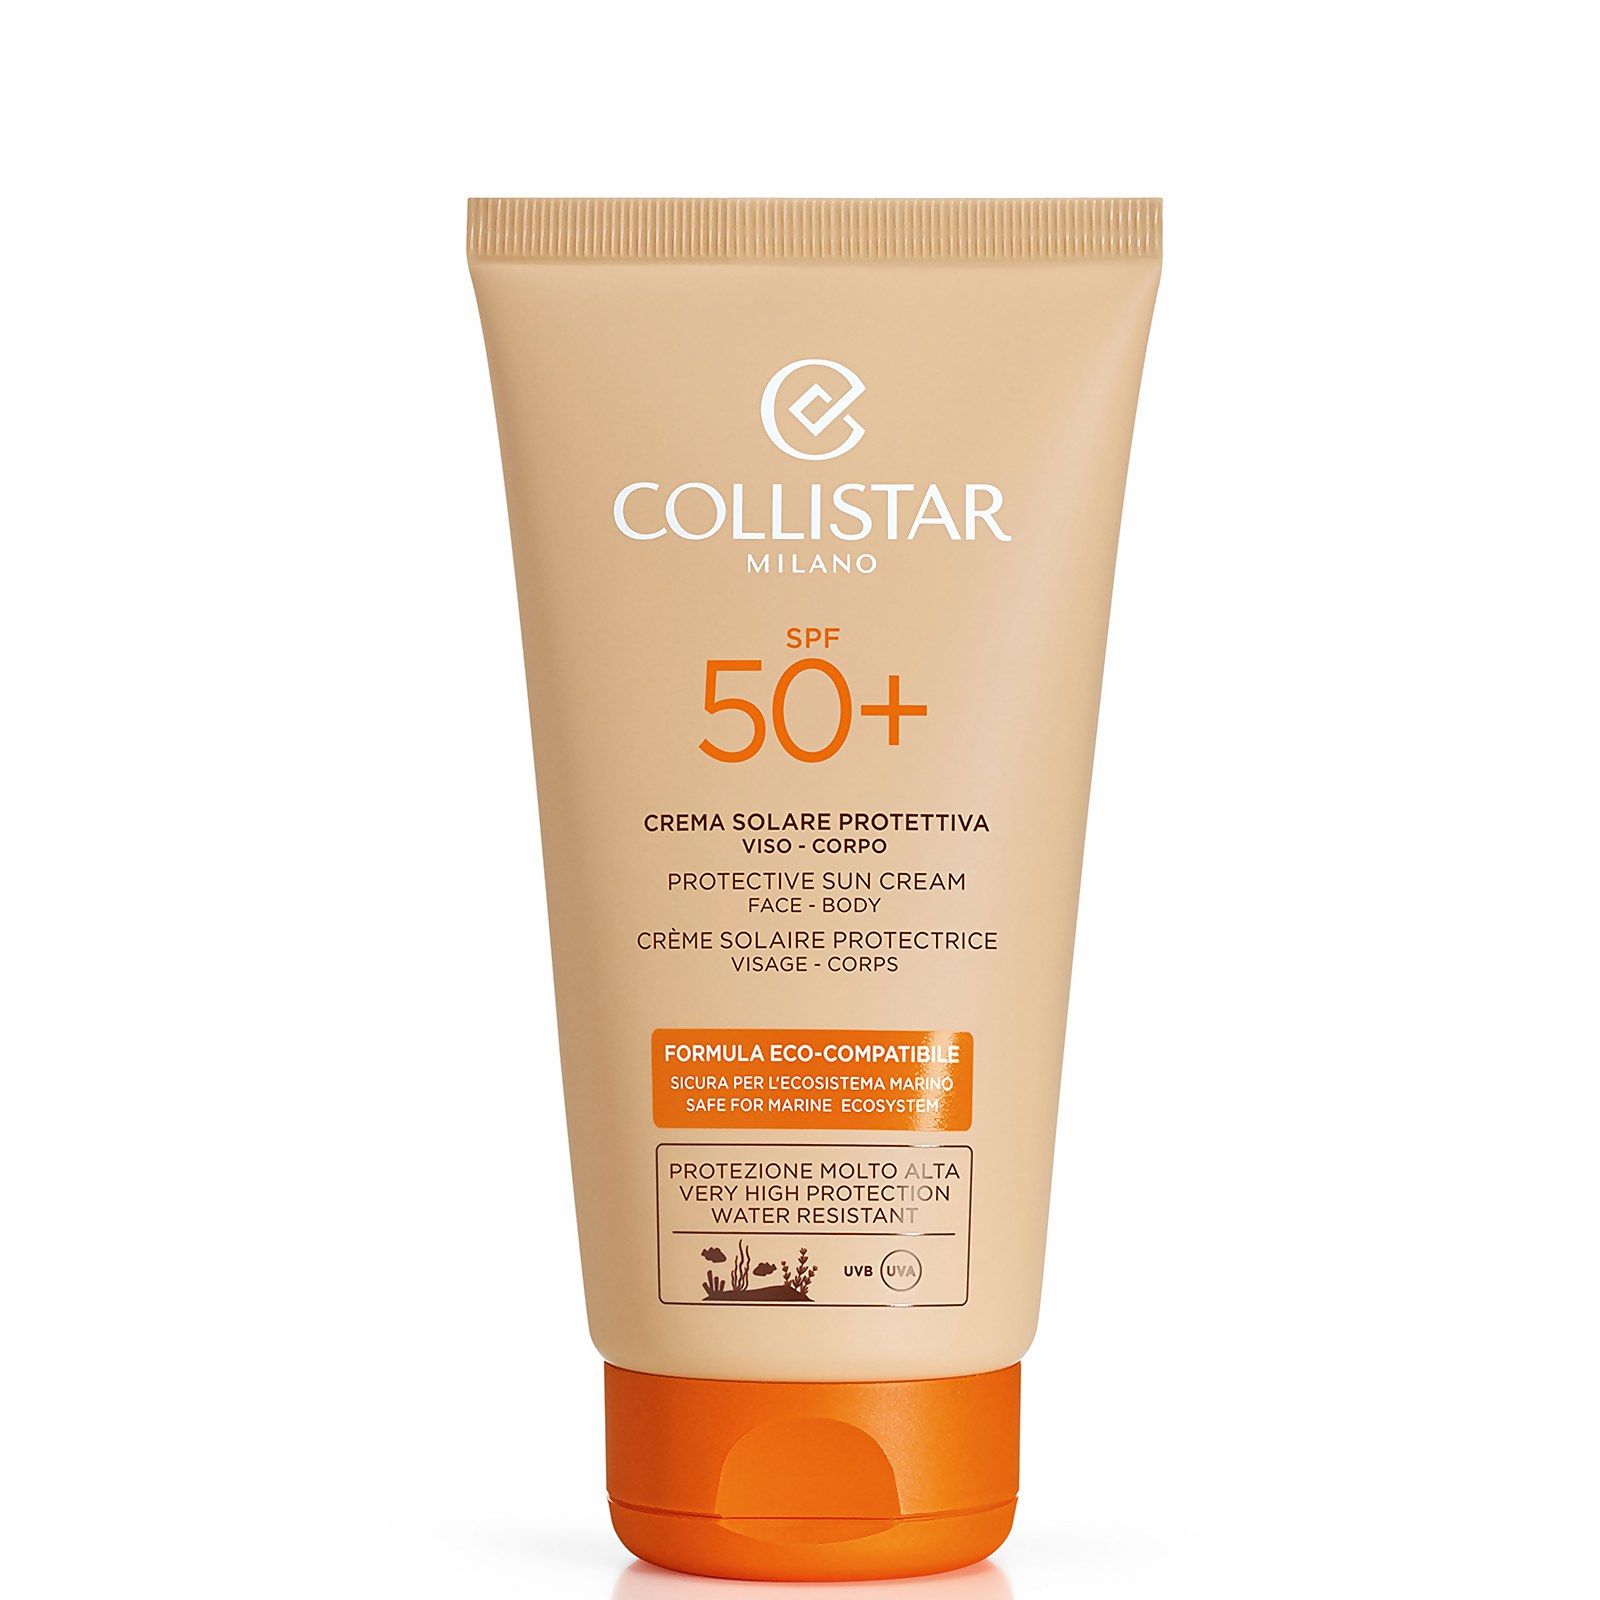 Collistar Protective Sun Cream Face-body Spf 50+ 150ml